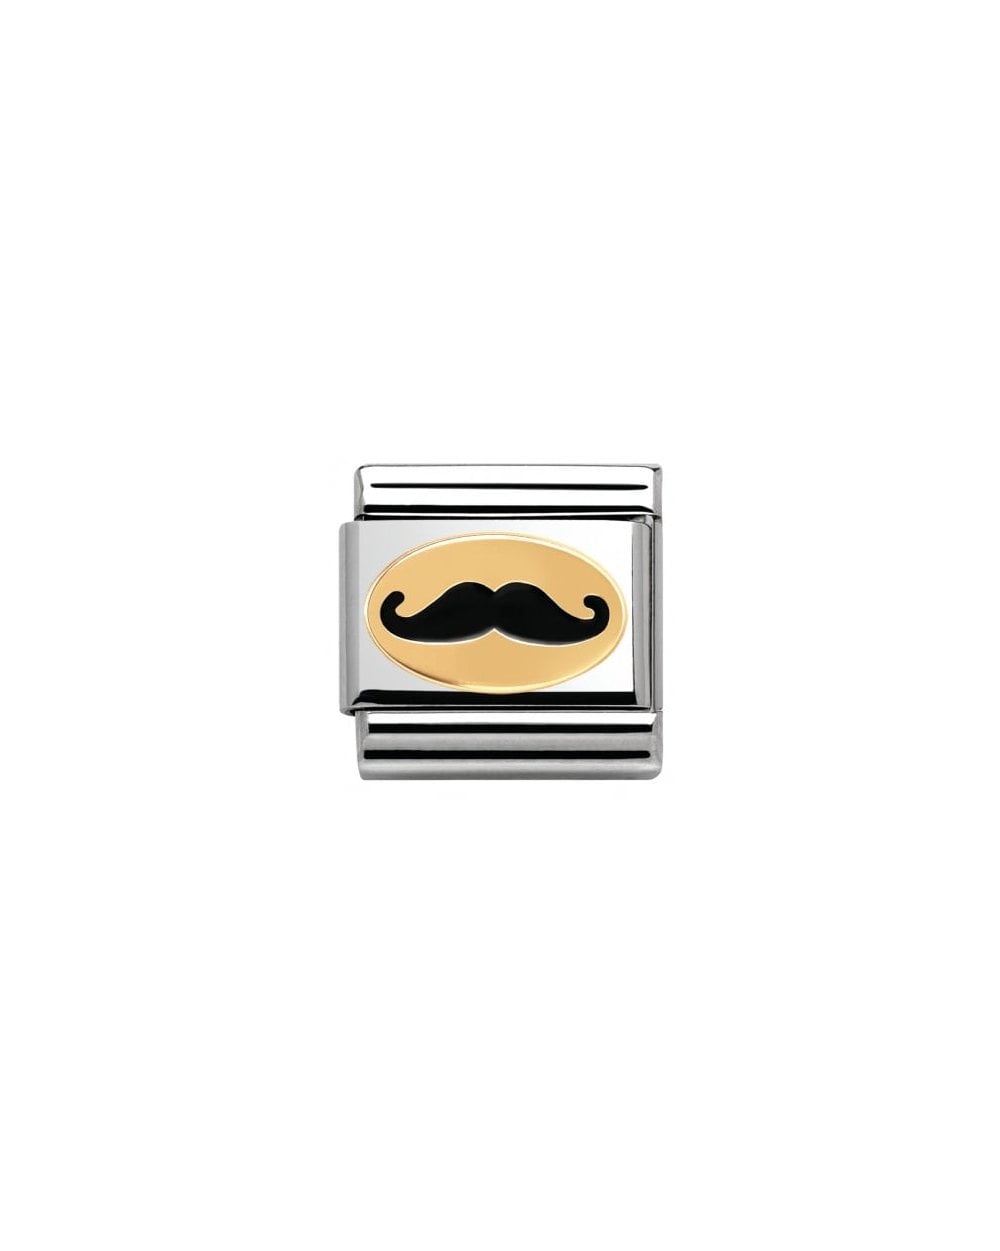 Nomination Black Moustache Gold